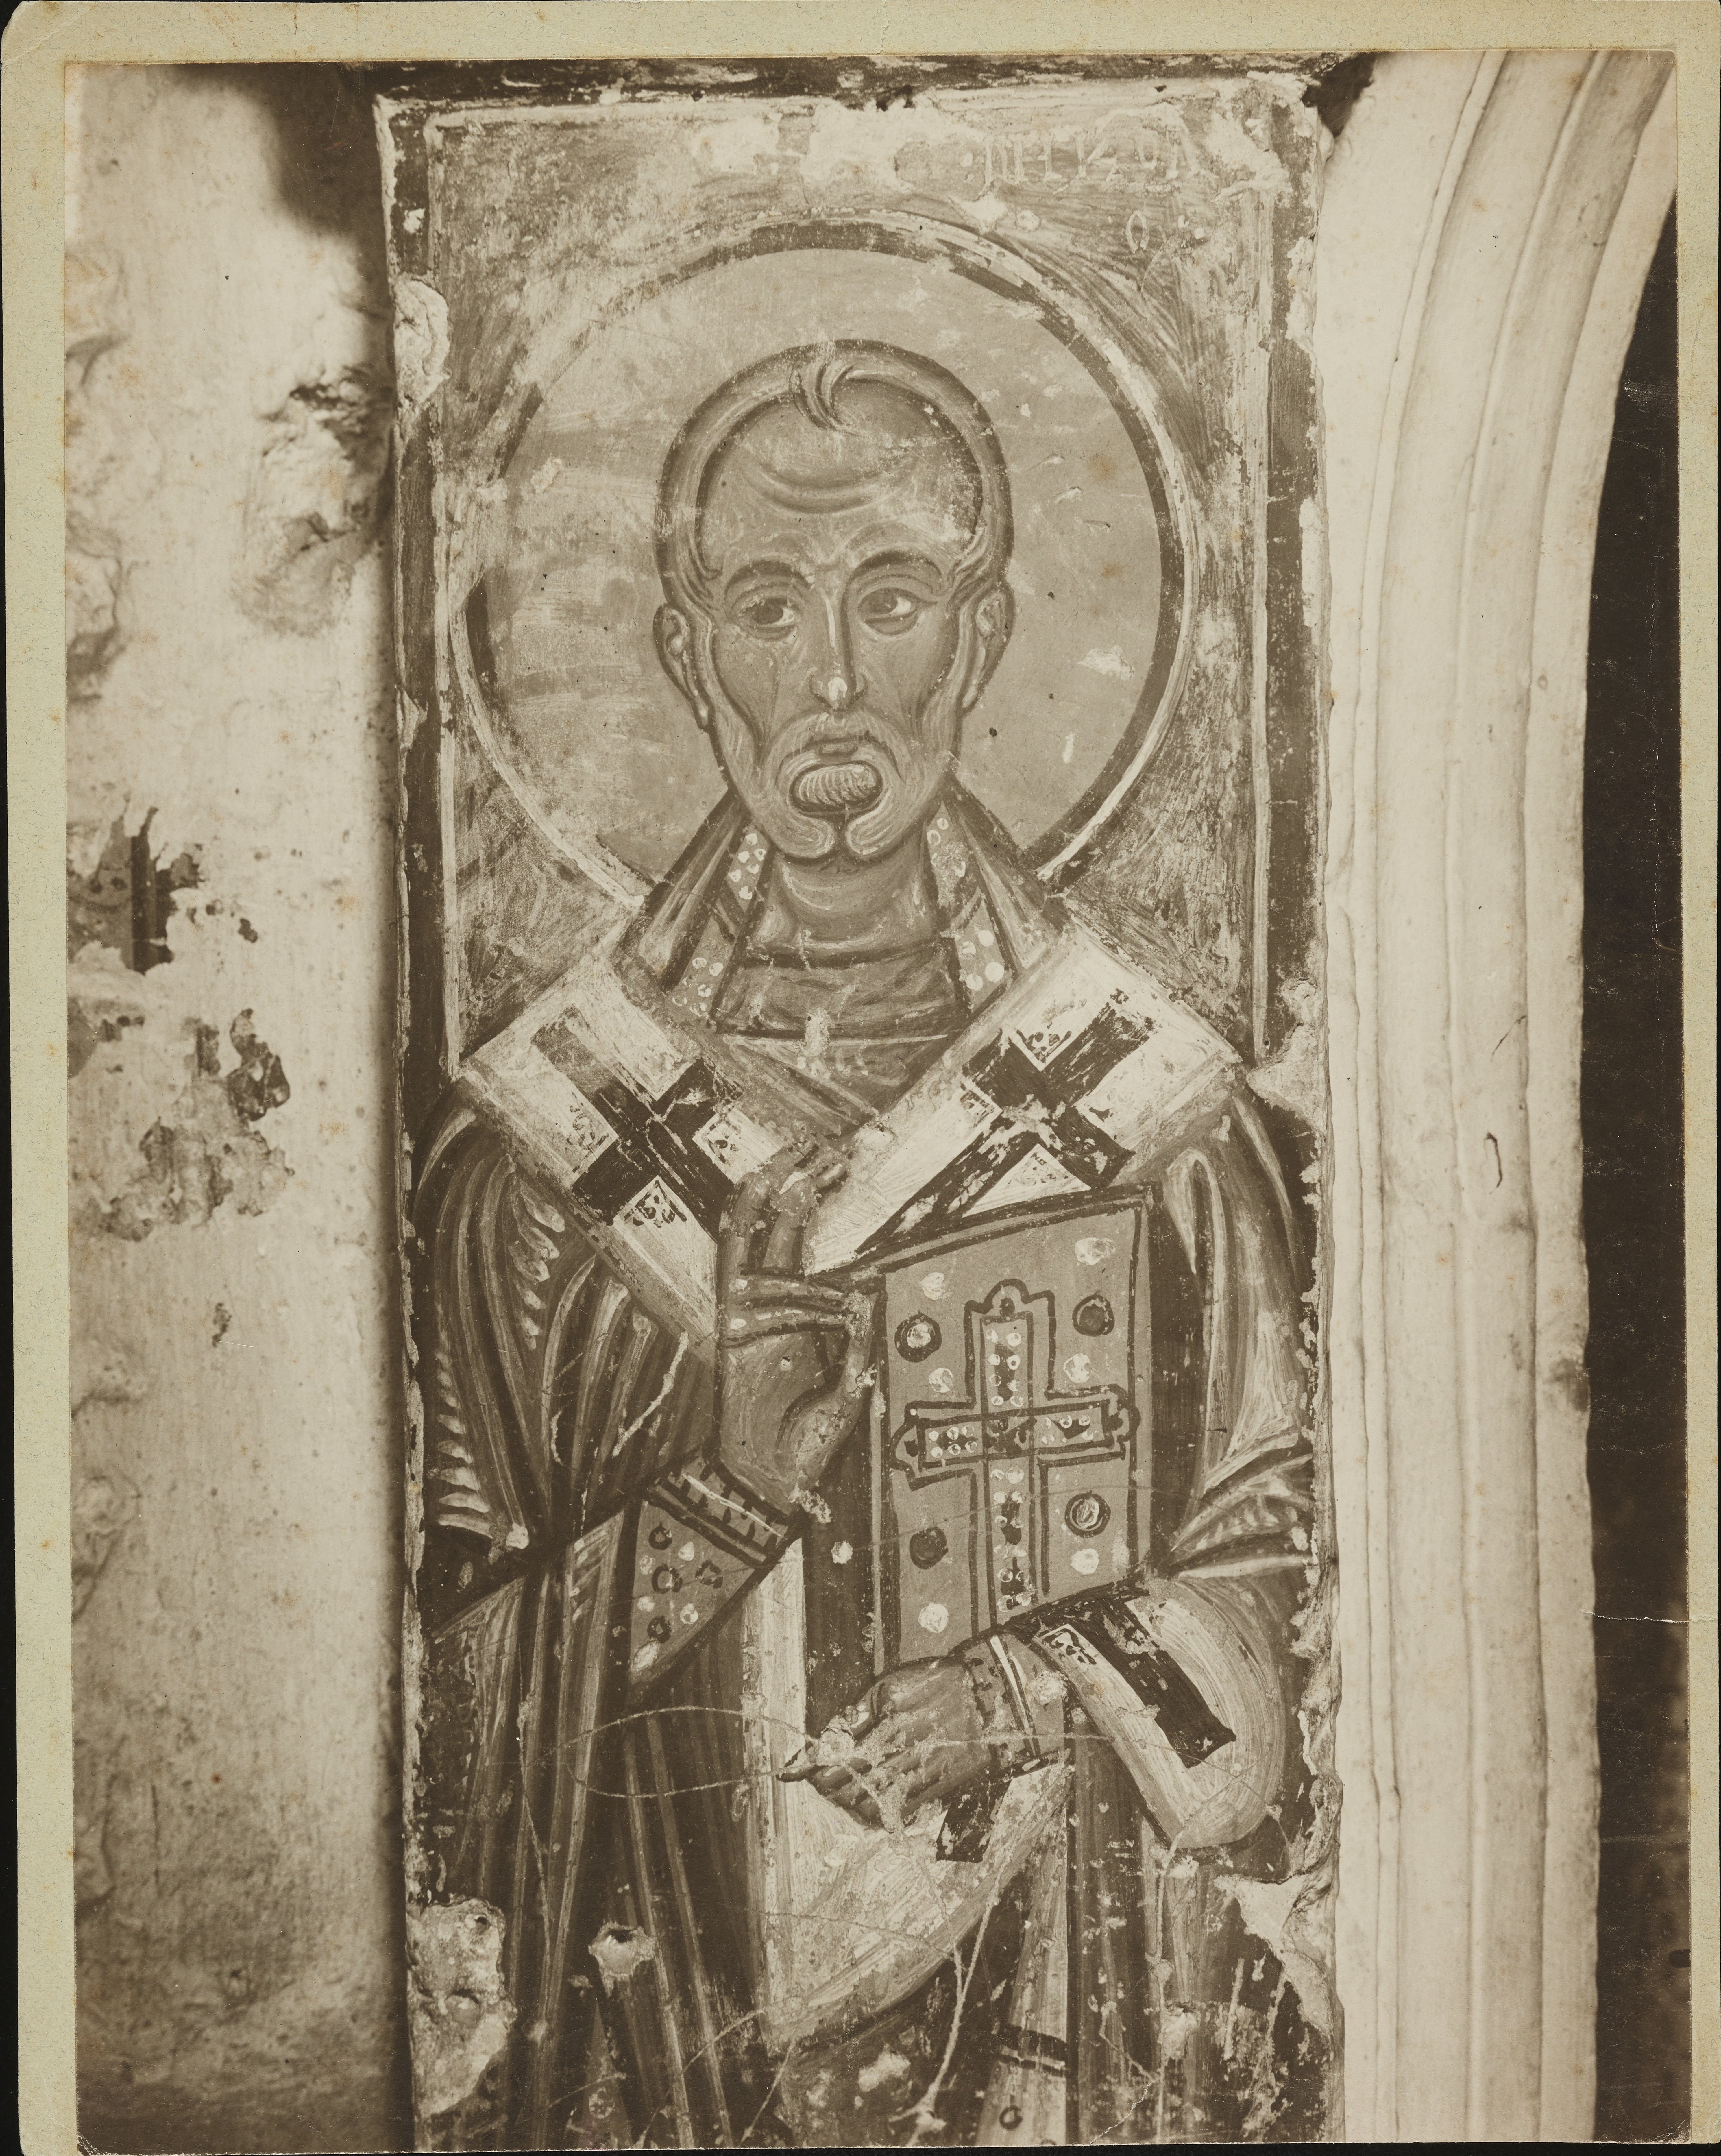 Fotografo non identificato, Brindisi - Chiesa di S. Lucia, affresco nella cripta, 1901-1925, gelatina ai sali d'argento, MPI6019199